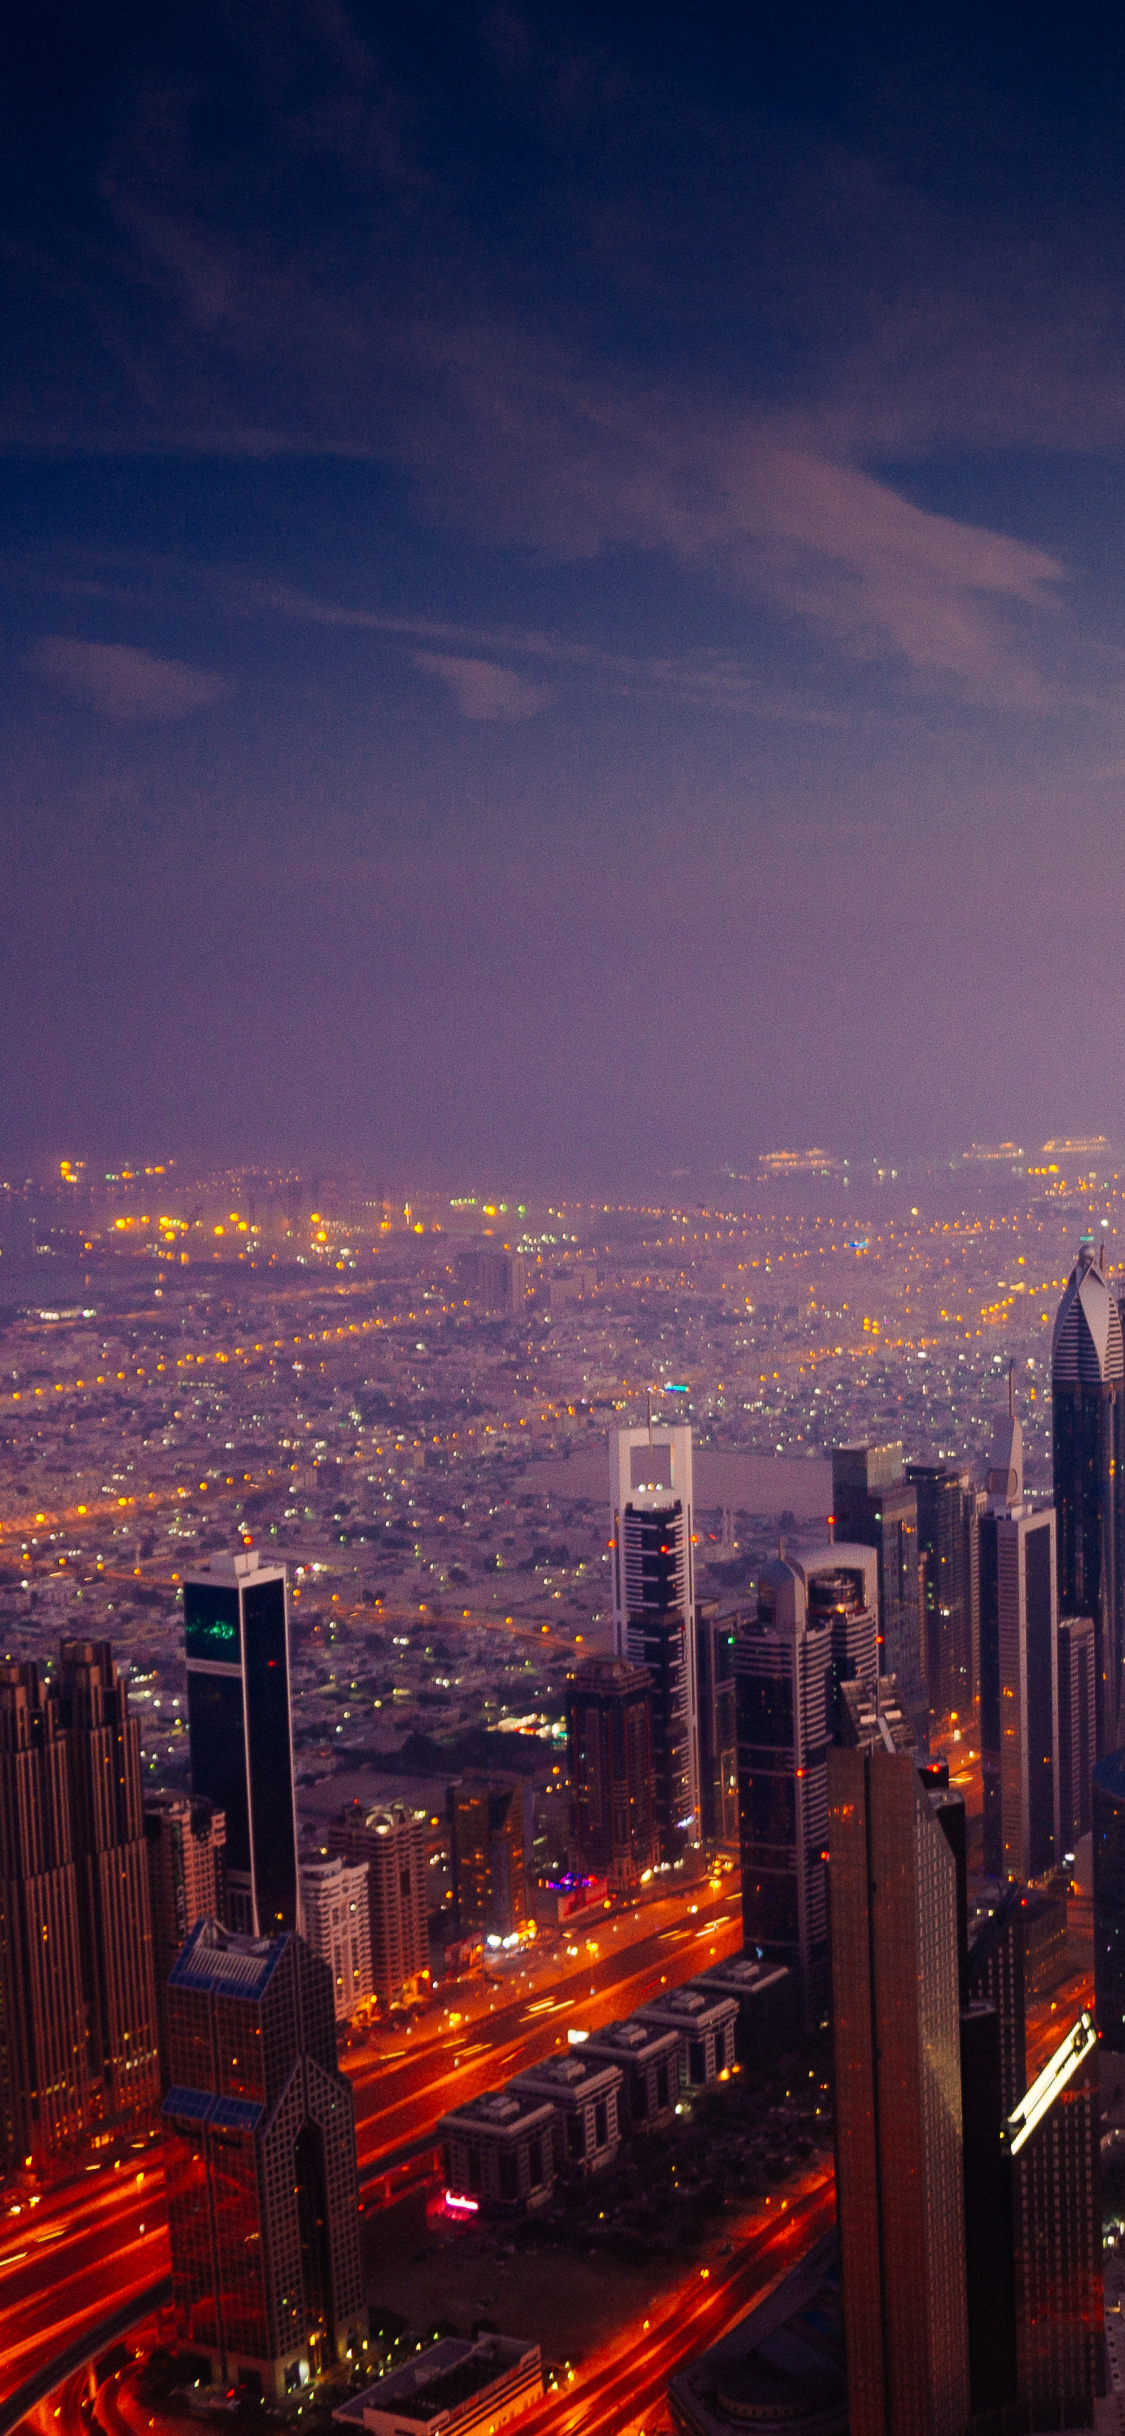 Descarga gratuita de fondo de pantalla para móvil de Ciudades, Noche, Ciudad, Rascacielos, Edificio, Luz, Paisaje Urbano, Burj Khalifa, Hecho Por El Hombre, Dubái.